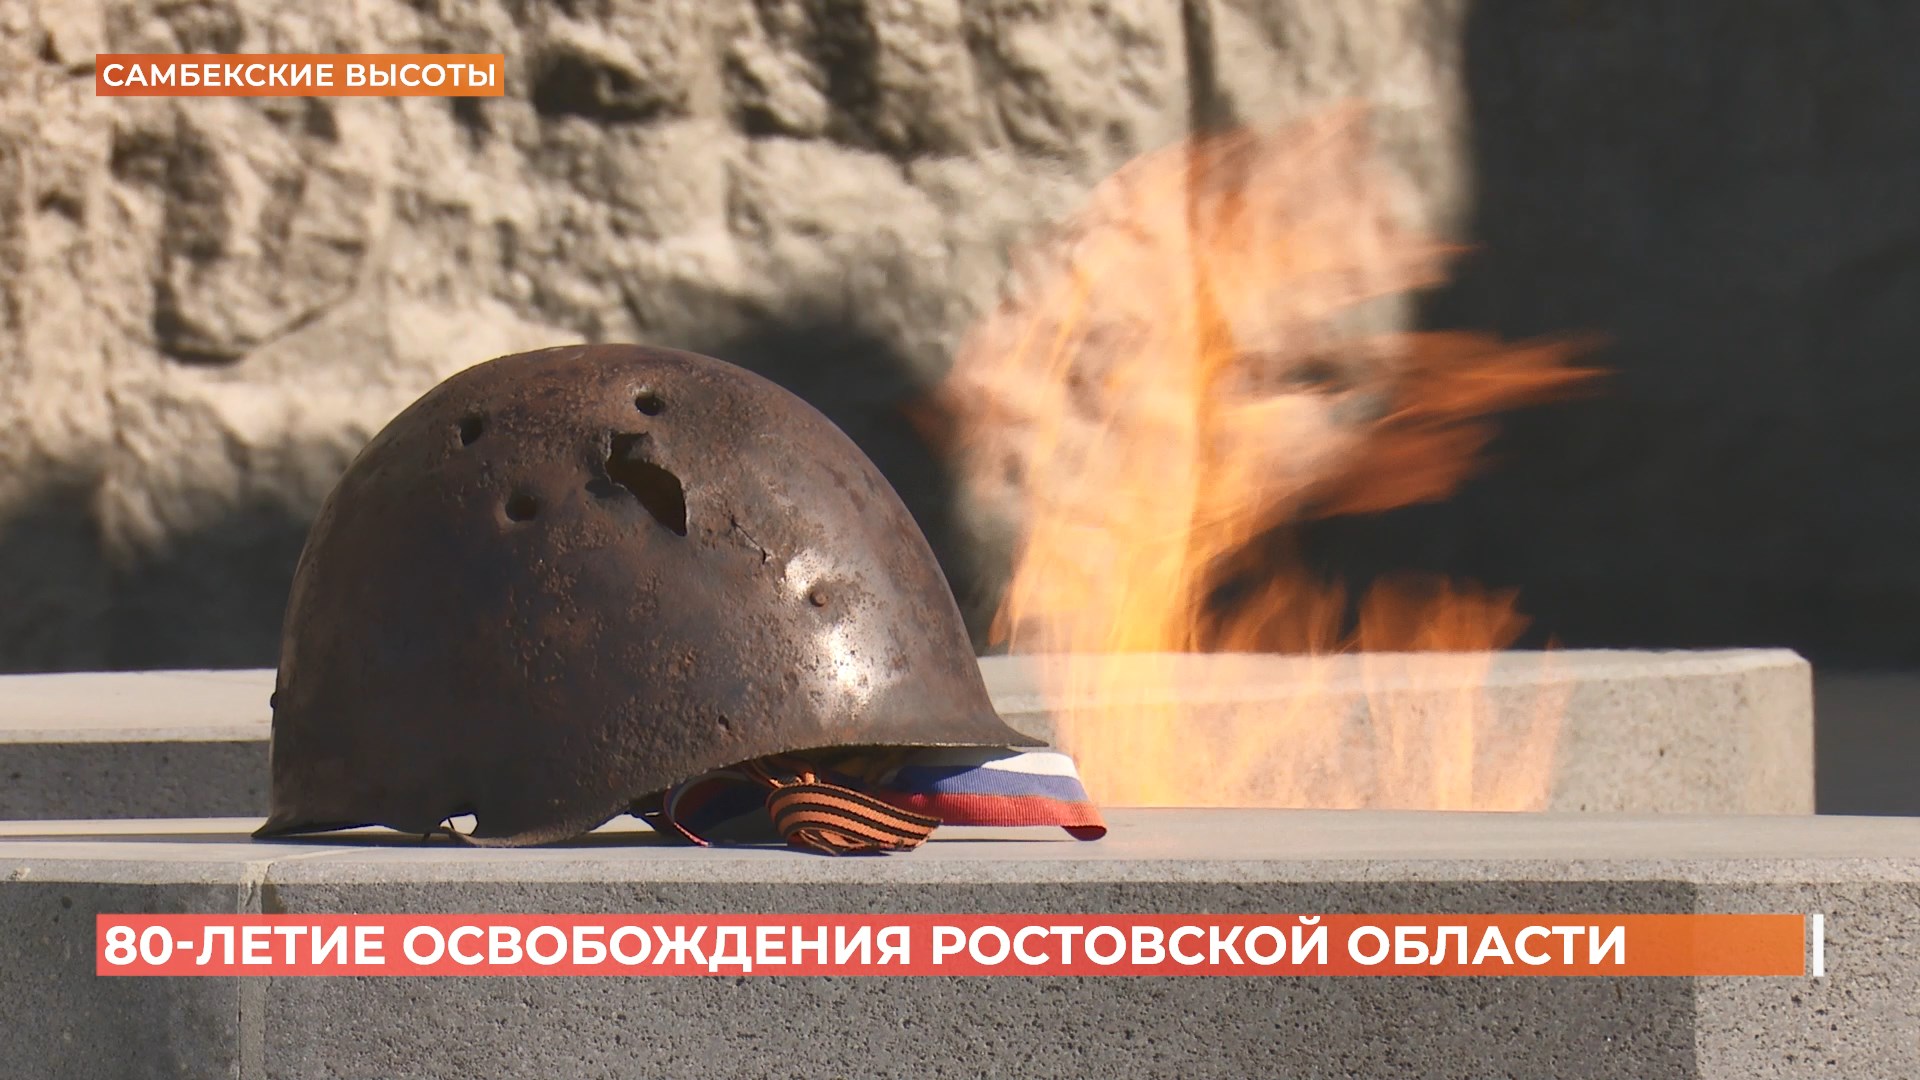 80 лет исполнилось со Дня освобождения Ростовской области от фашистских захватчиков